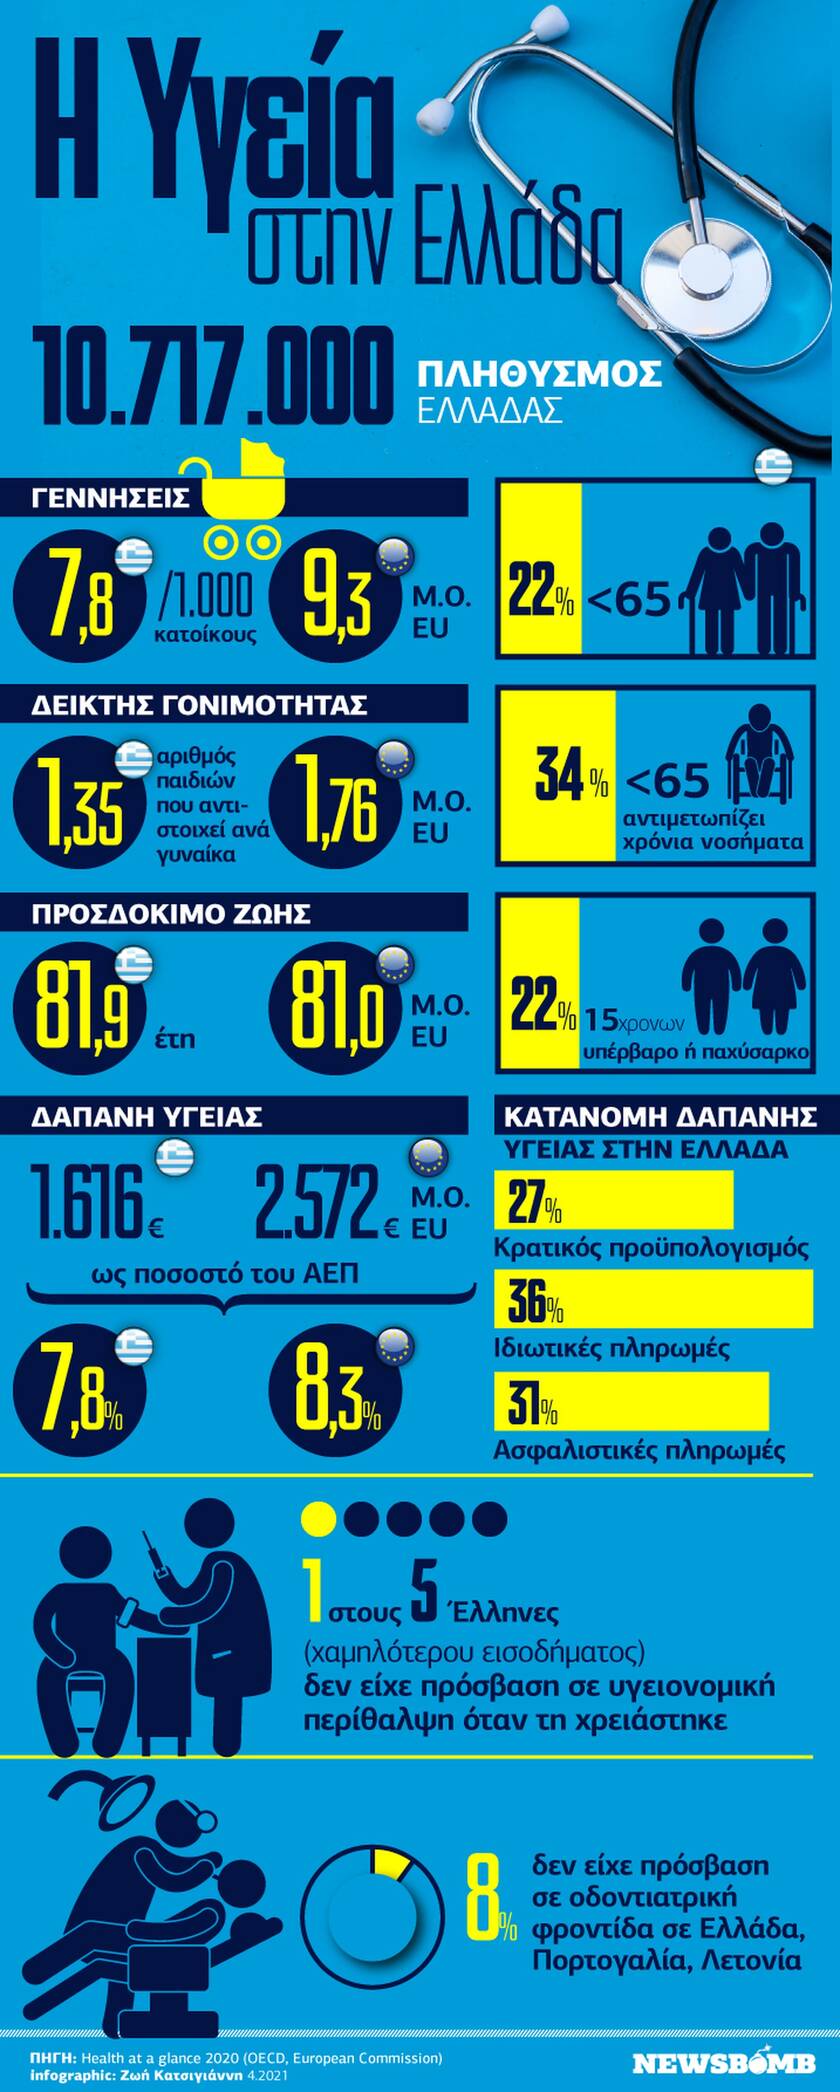 Η Υγεία στην Ελλάδα: Ανάγκη για πρόληψη και άμβλυνση των ανισοτήτων - Το Infographic του Newsbomb.gr